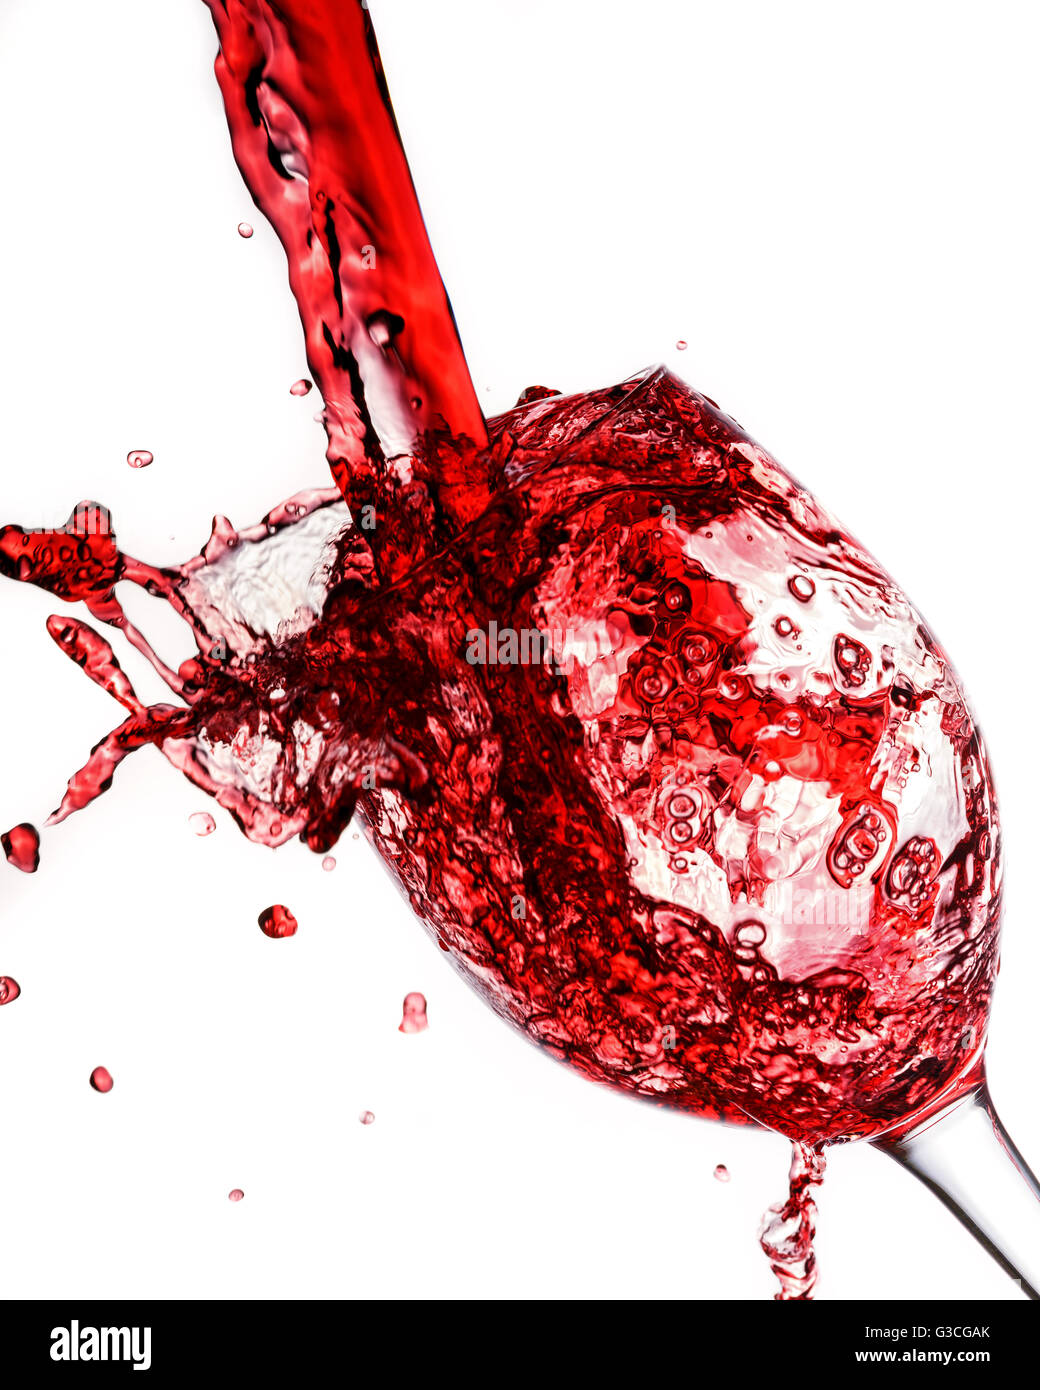 Vino rosso versato in vetro del vino Foto Stock